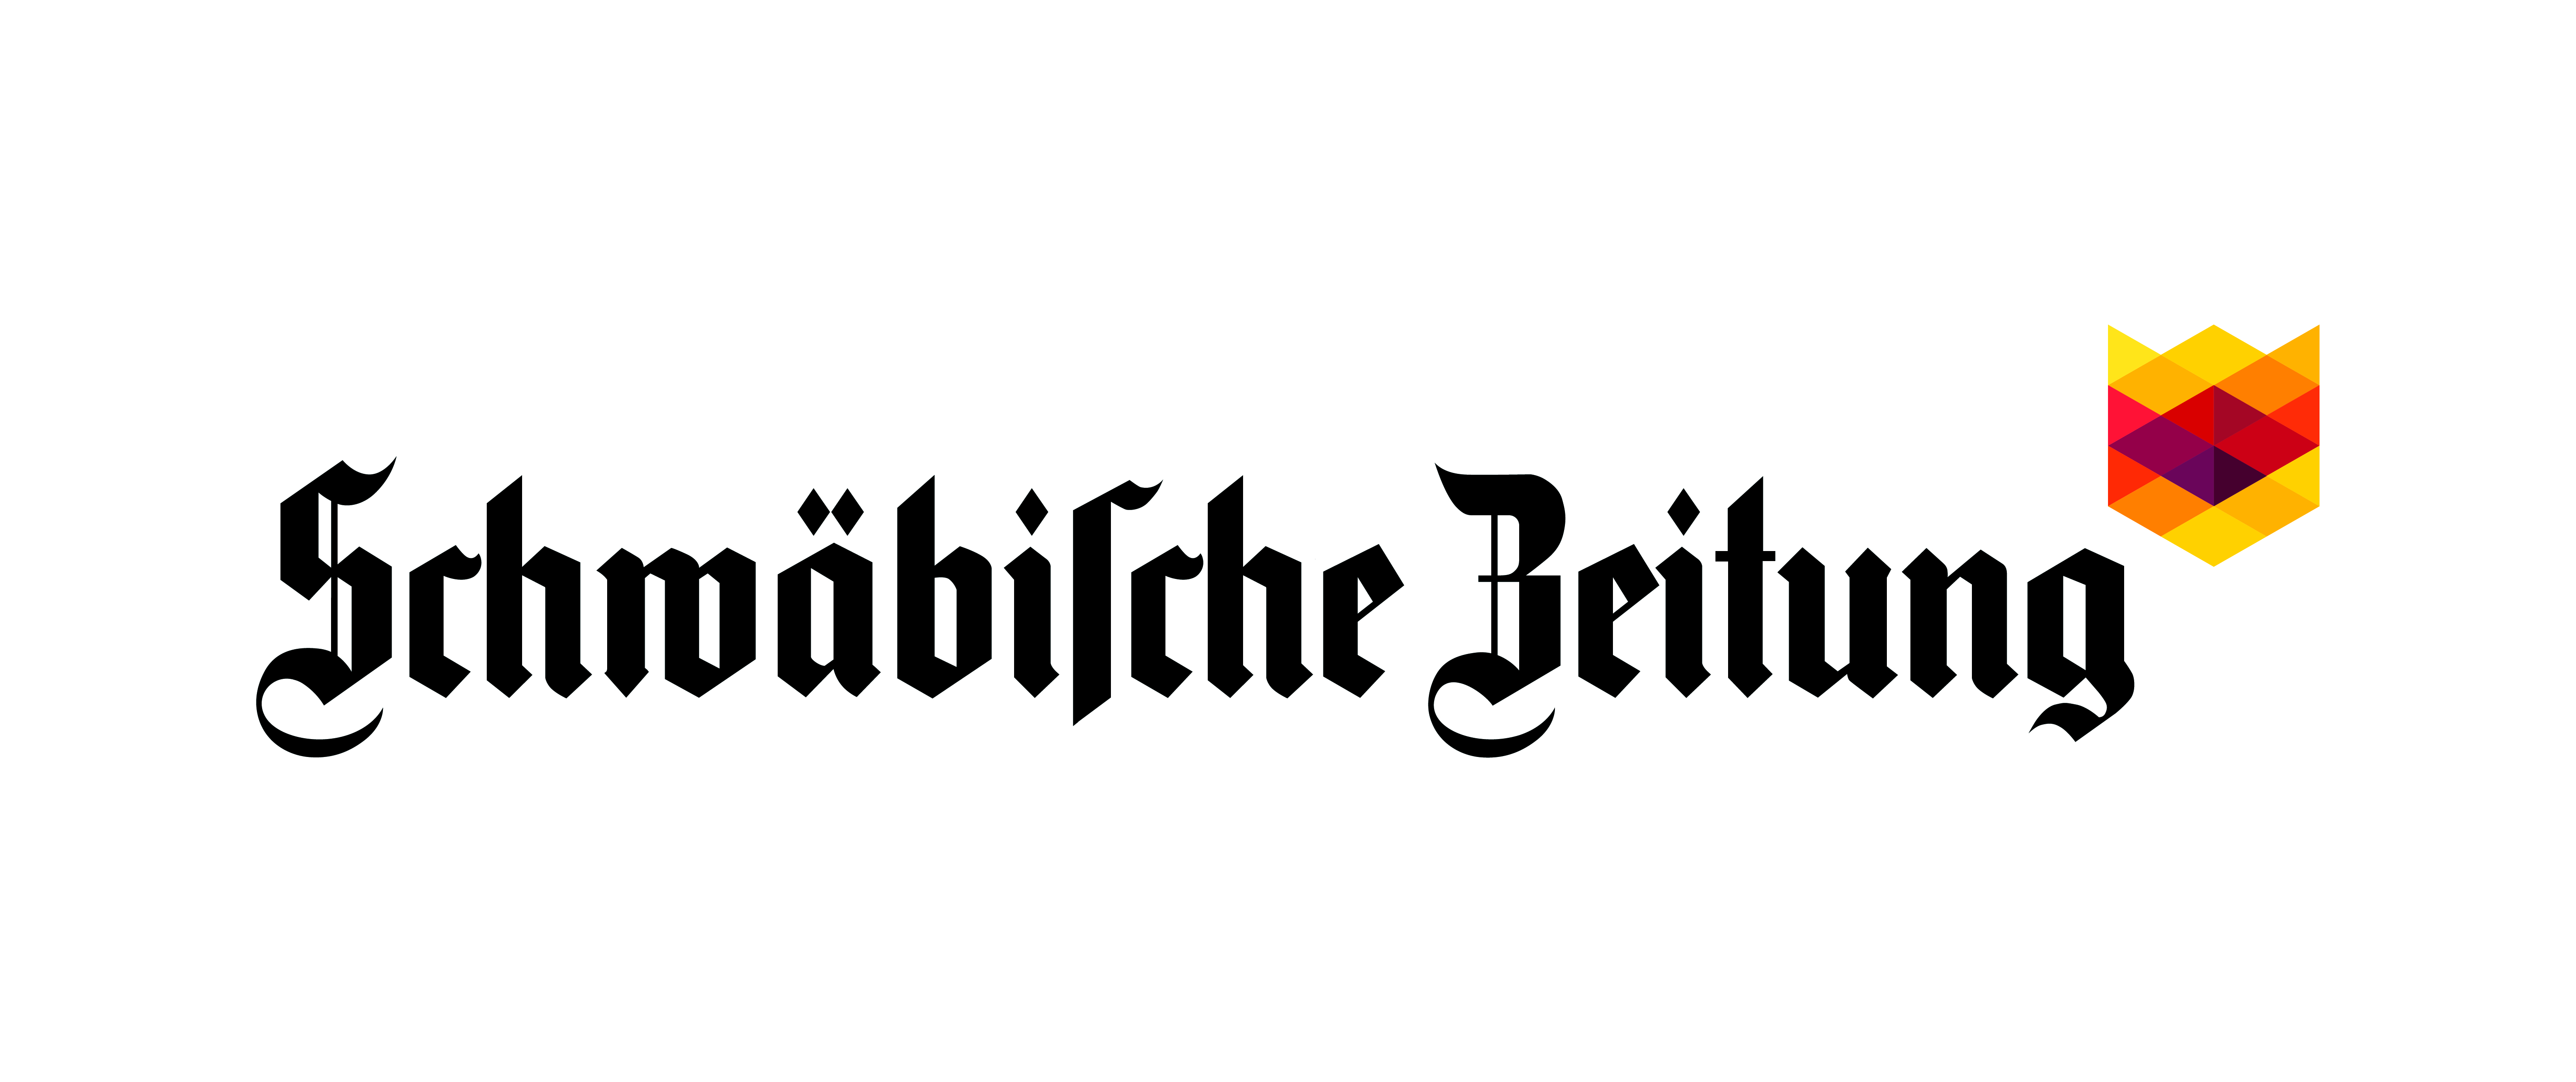 Schwäbische Zeitung Friedrichshafen GmbH & Co. KG